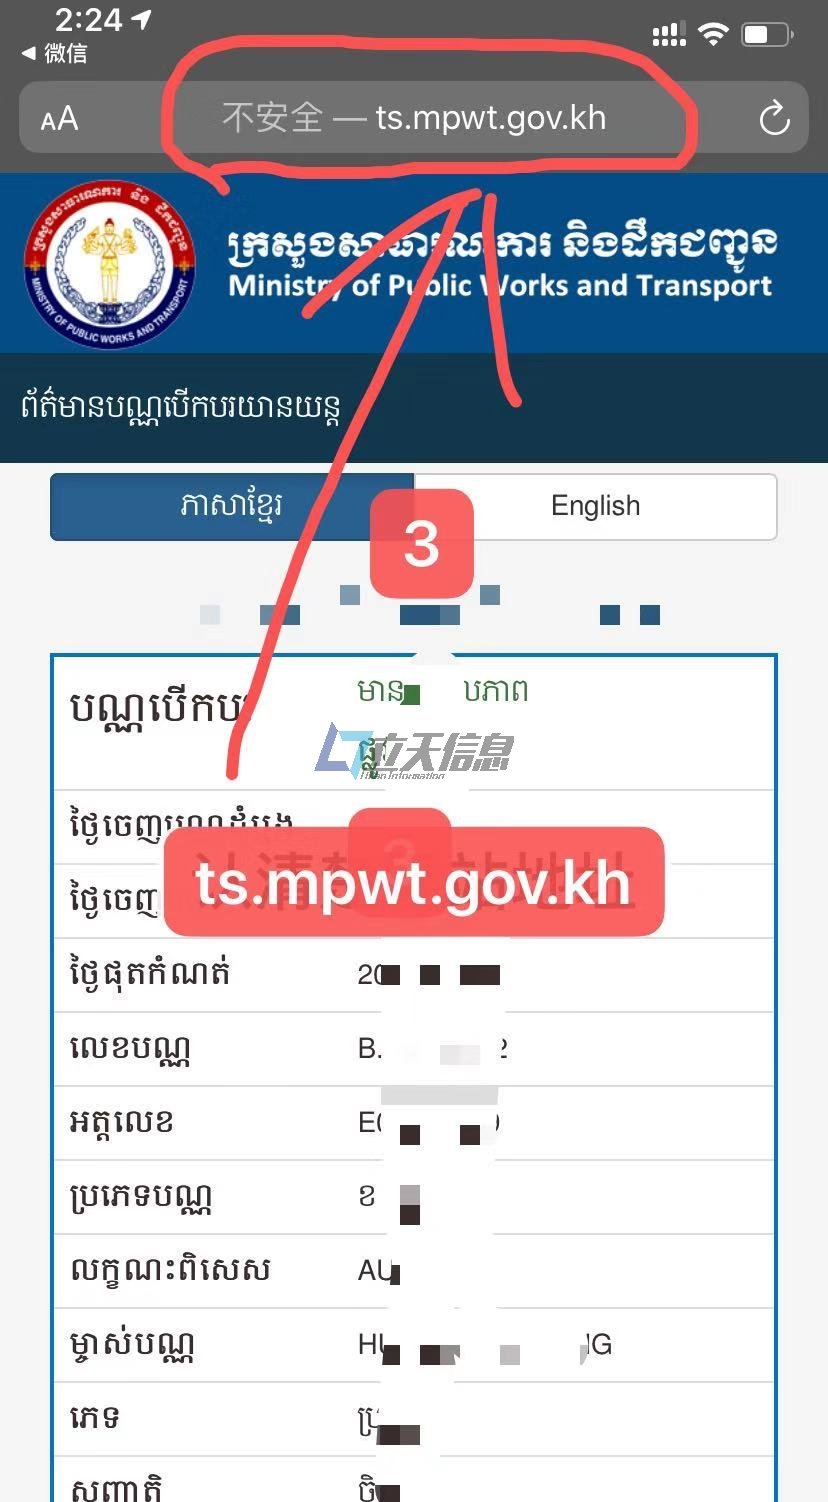 柬埔寨驾驶证真伪查询